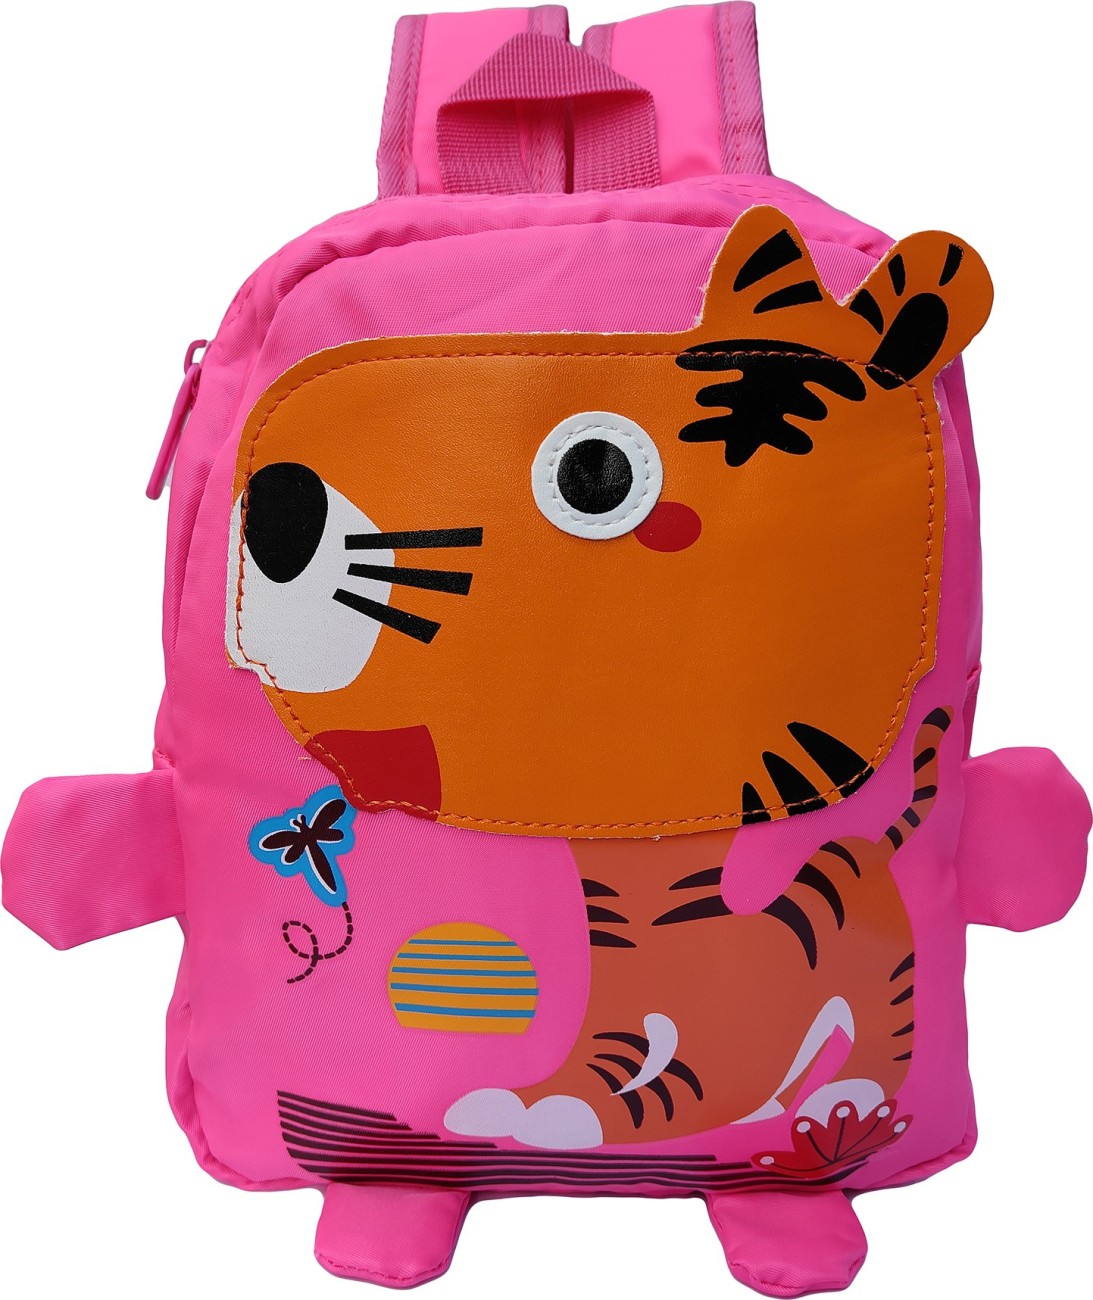 HAWAI Children School Bags Boys Girls Baby Backpack Cartoon School Backpack  Kids 10 L Backpack Purple - Price in India | Flipkart.com